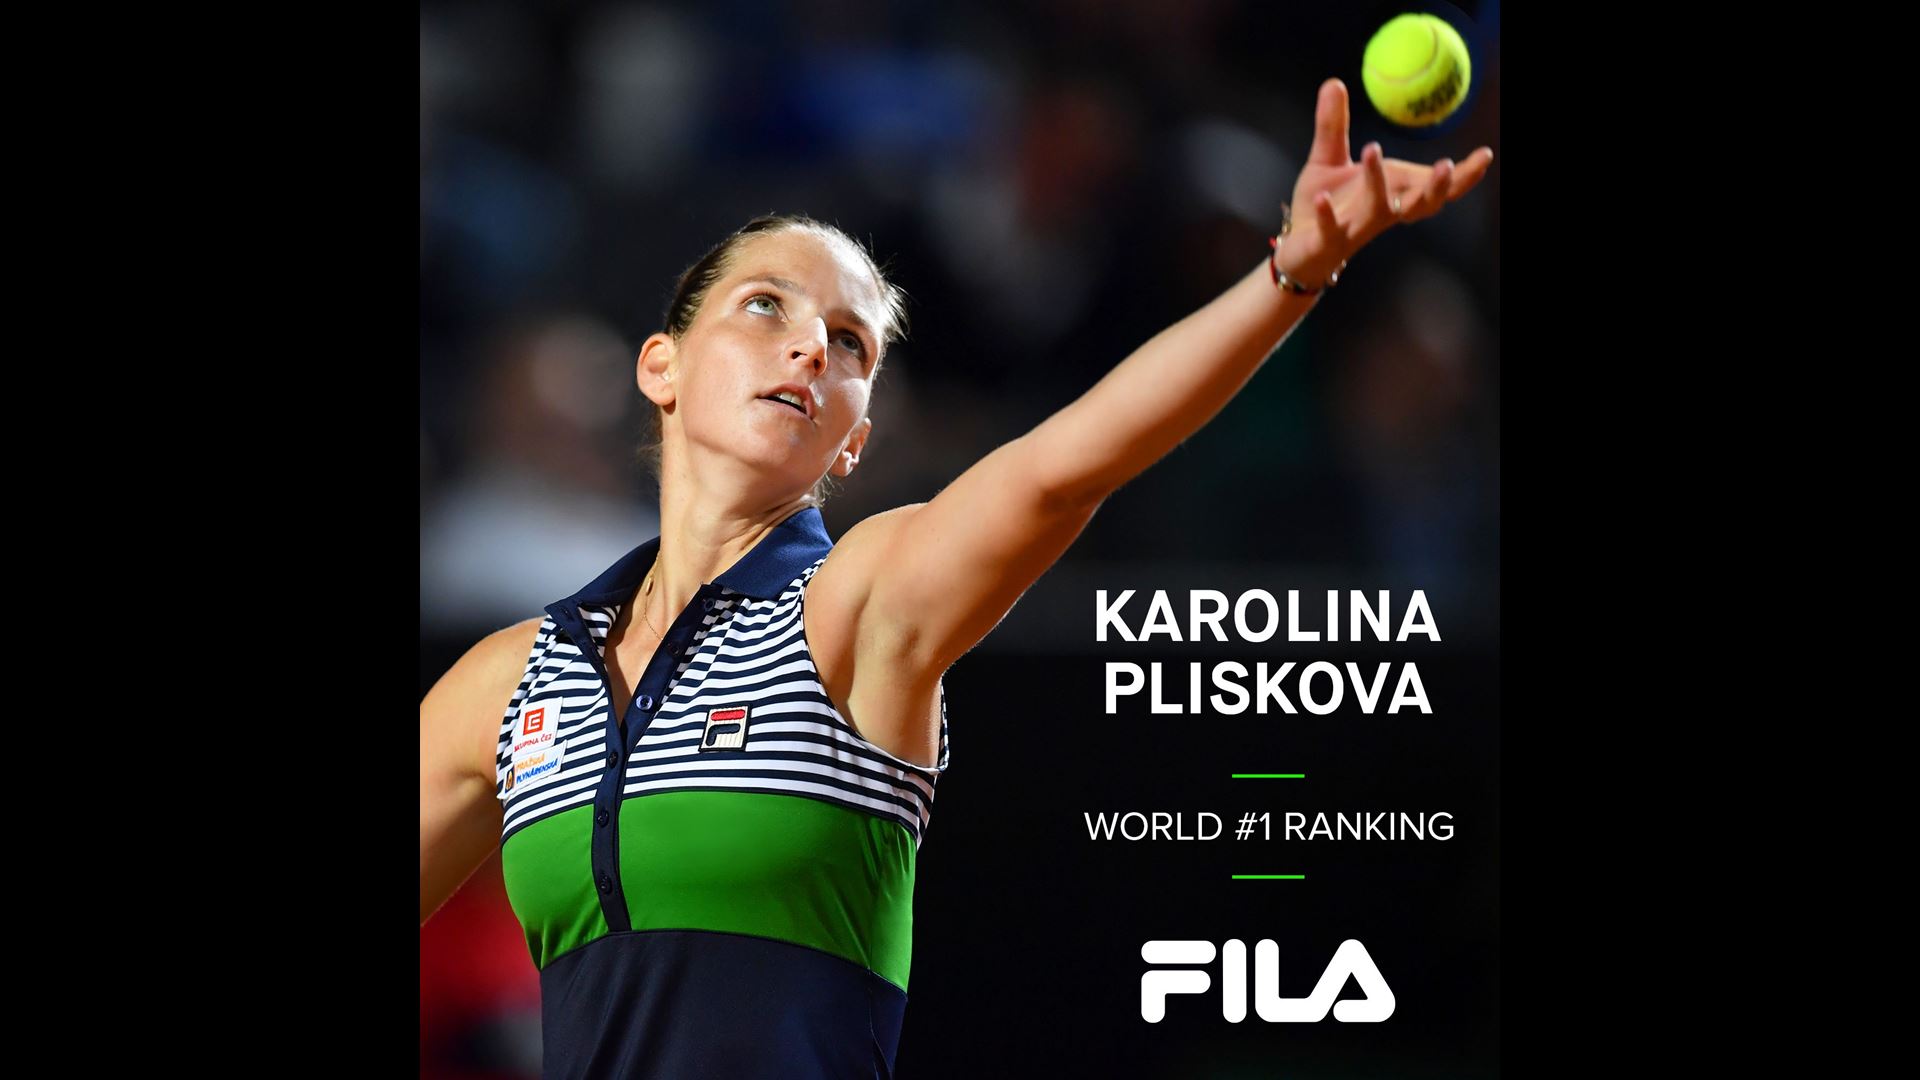 FILA Tennis Athlete Karolina Pliskova Becomes New WTA Tour World #1